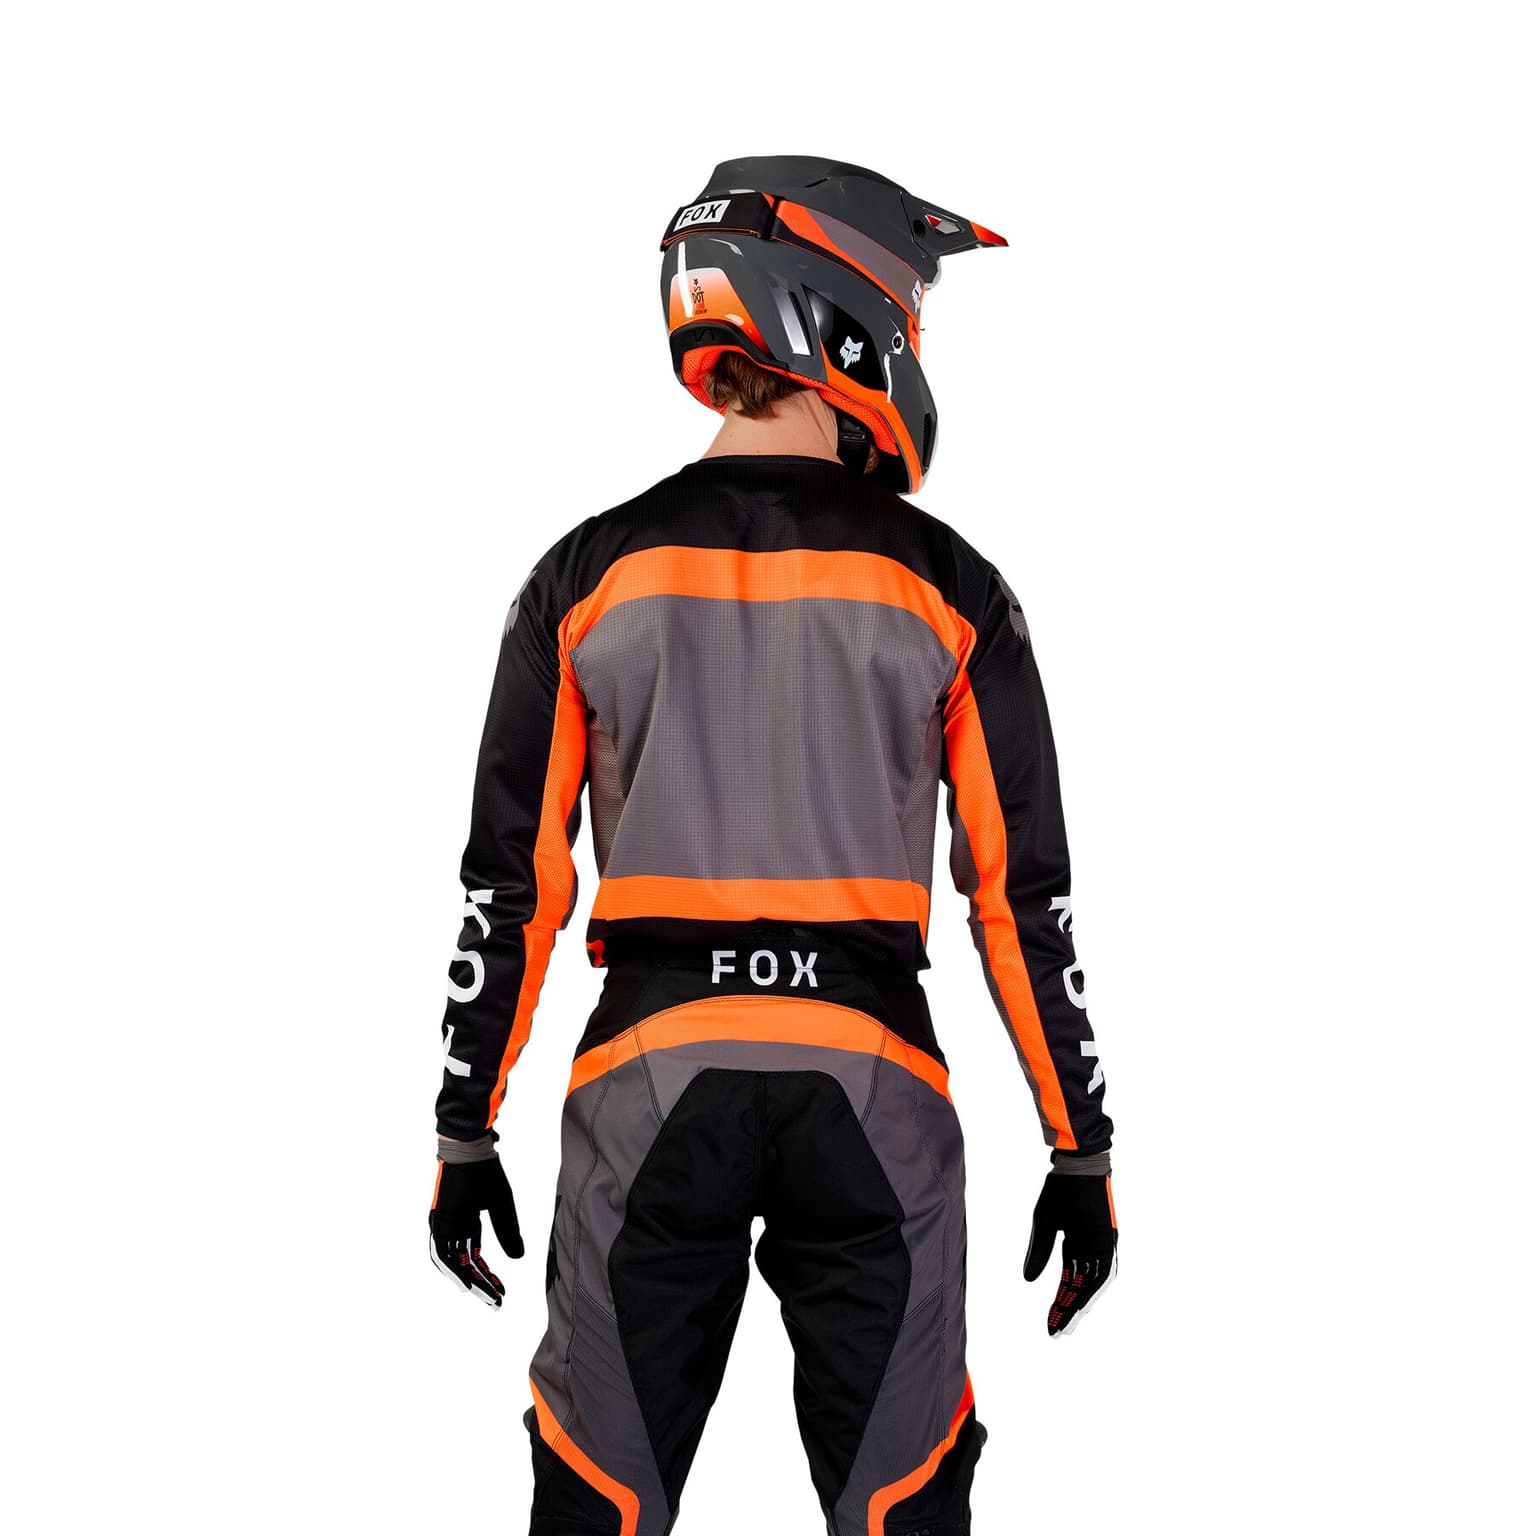 Fox Fox 180 Ballast Maglietta da bici nero 2